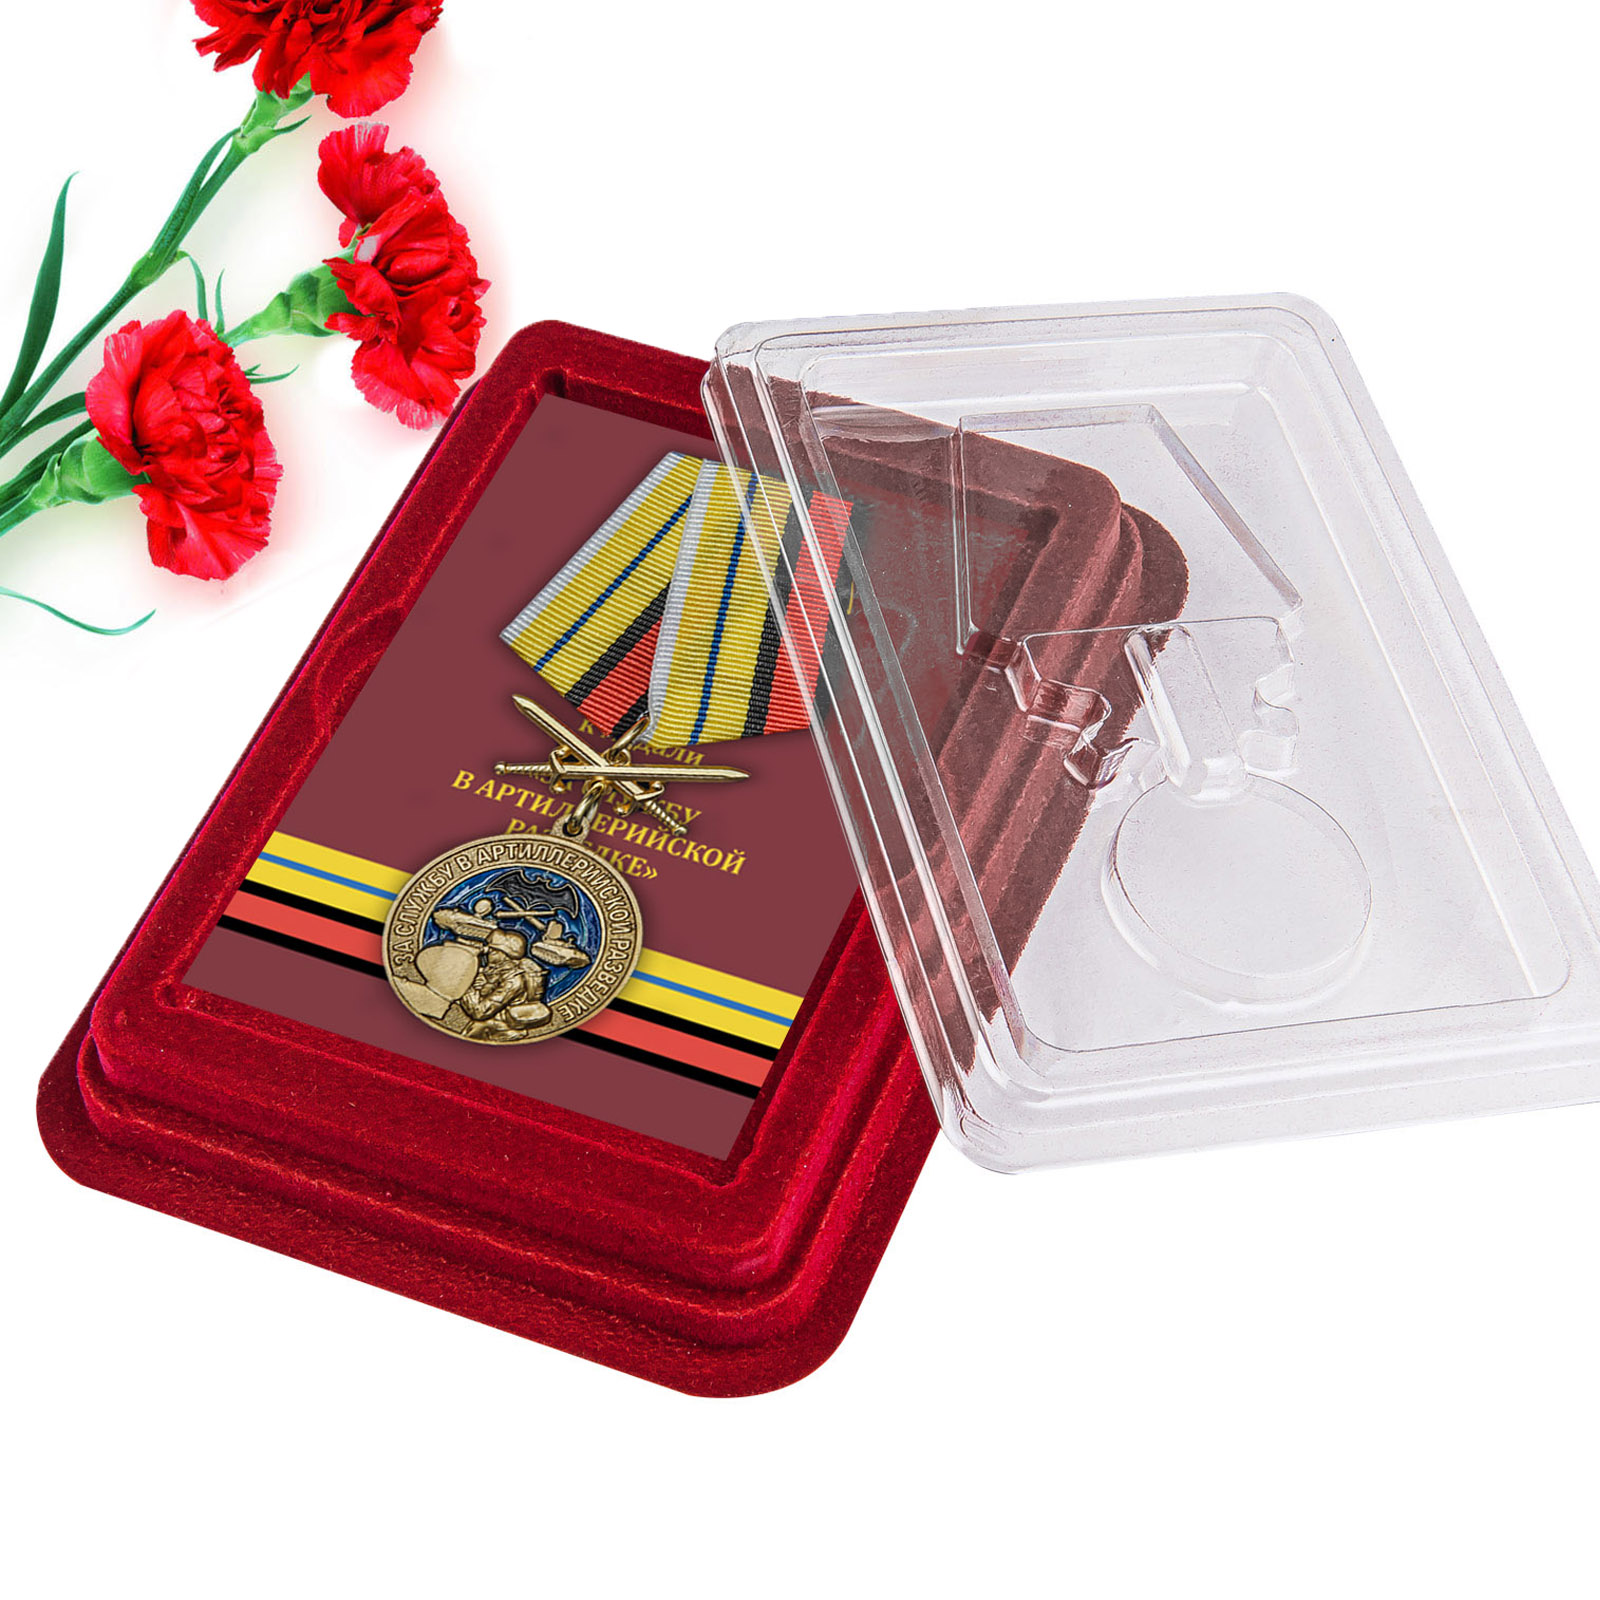 Купить медаль За службу в артиллерийской разведке по специальной цене